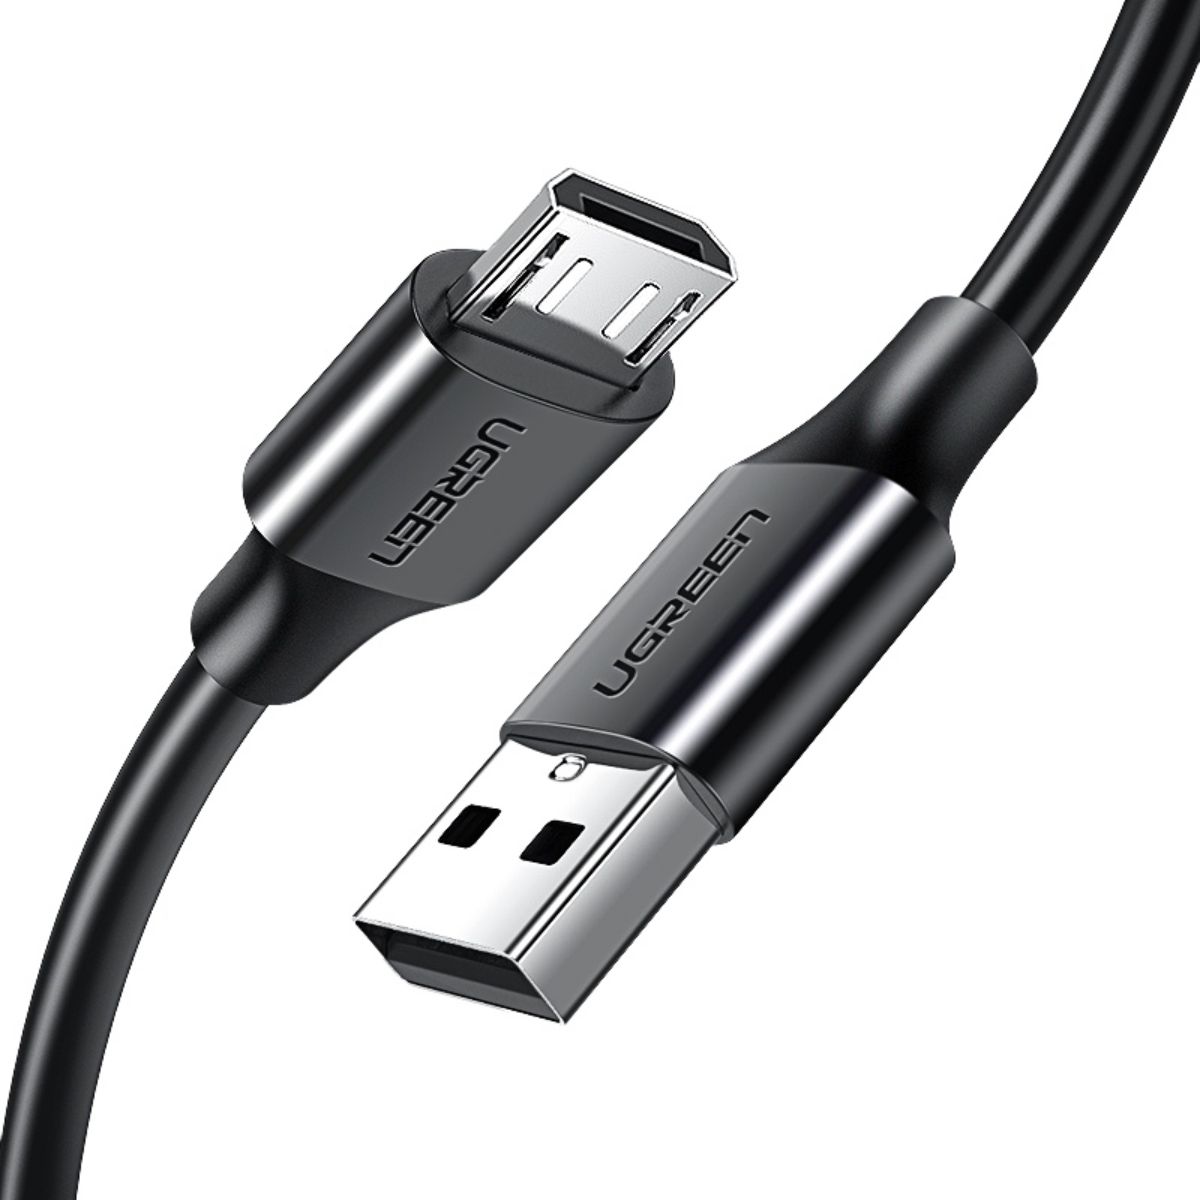 Cáp sạc nhanh 2m USB đến Micro USB Ugreen 60138 US289 3 lớp chống nhiễu, tốc độ truyền 480Mbps